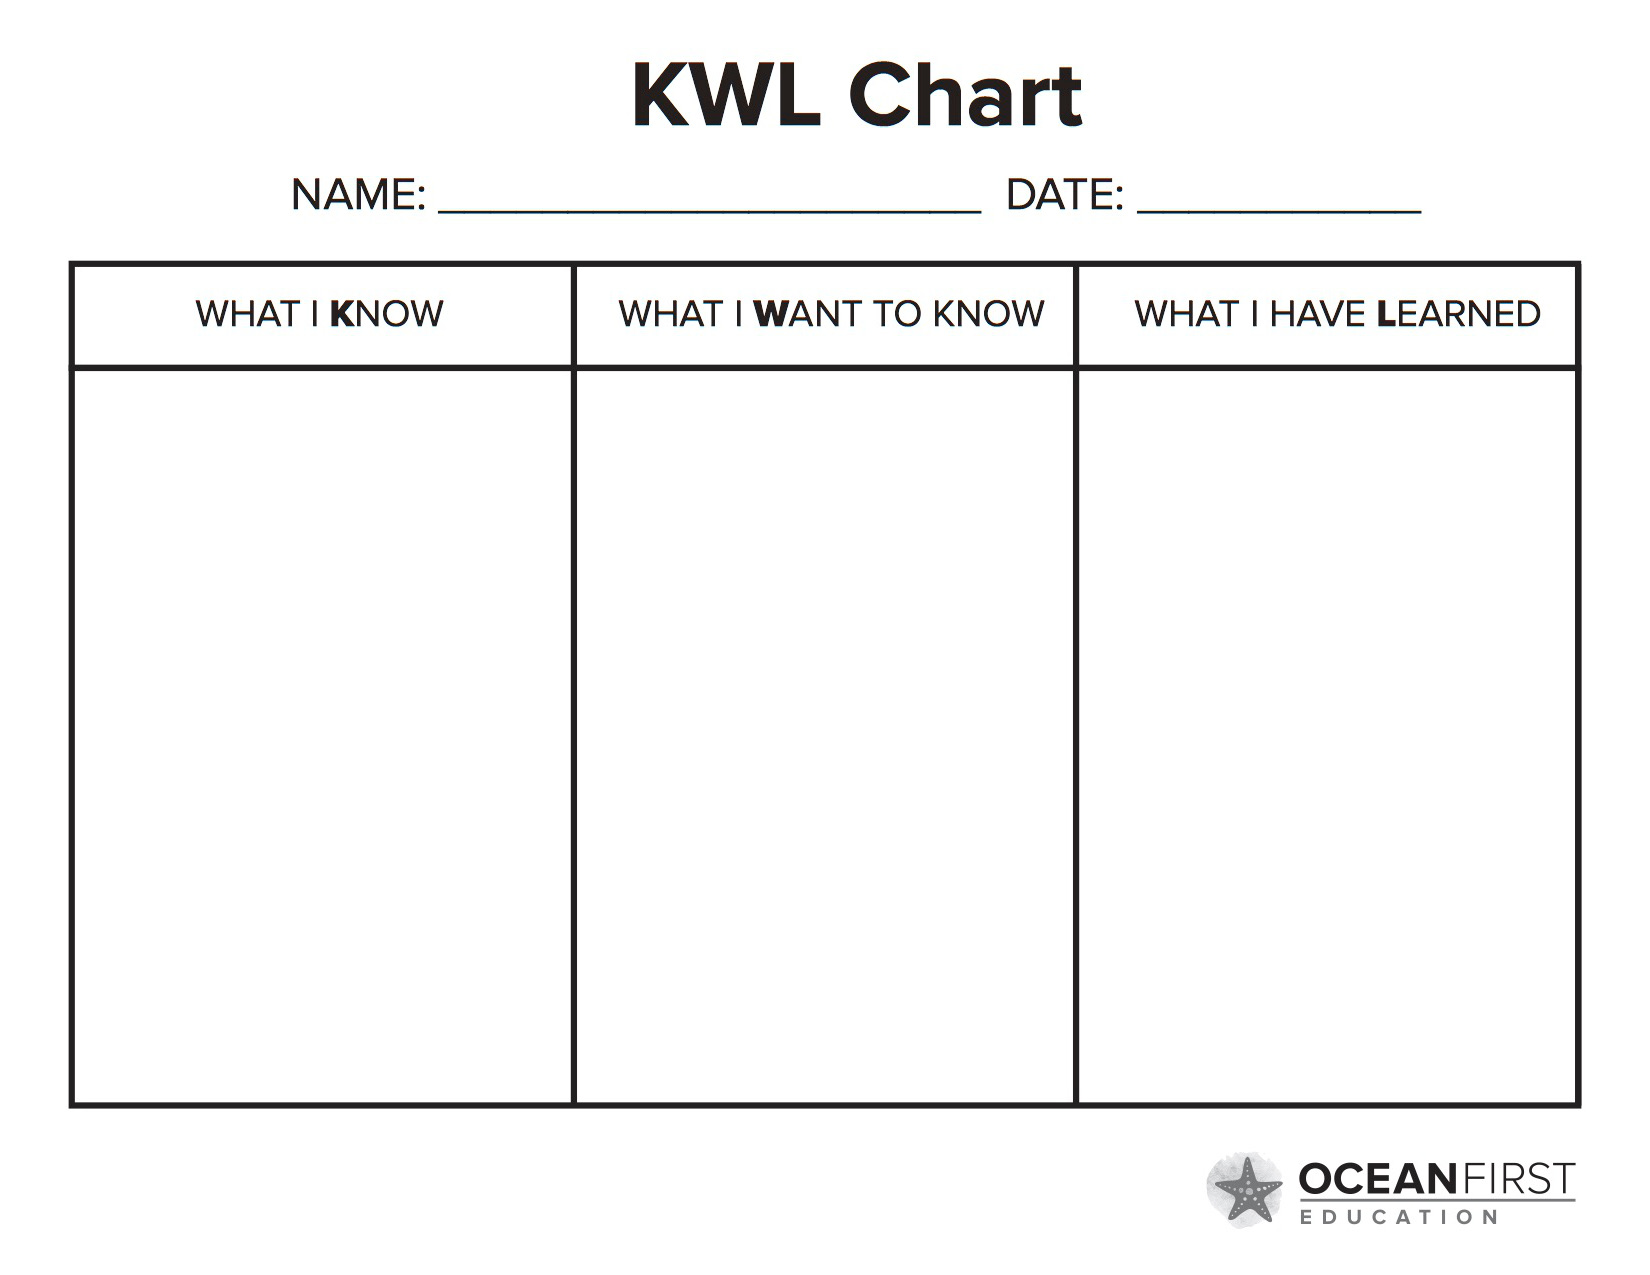 Wants to know what gives. Таблица KWL. KWL. KWL-диаграммы. Стратегия KWL.